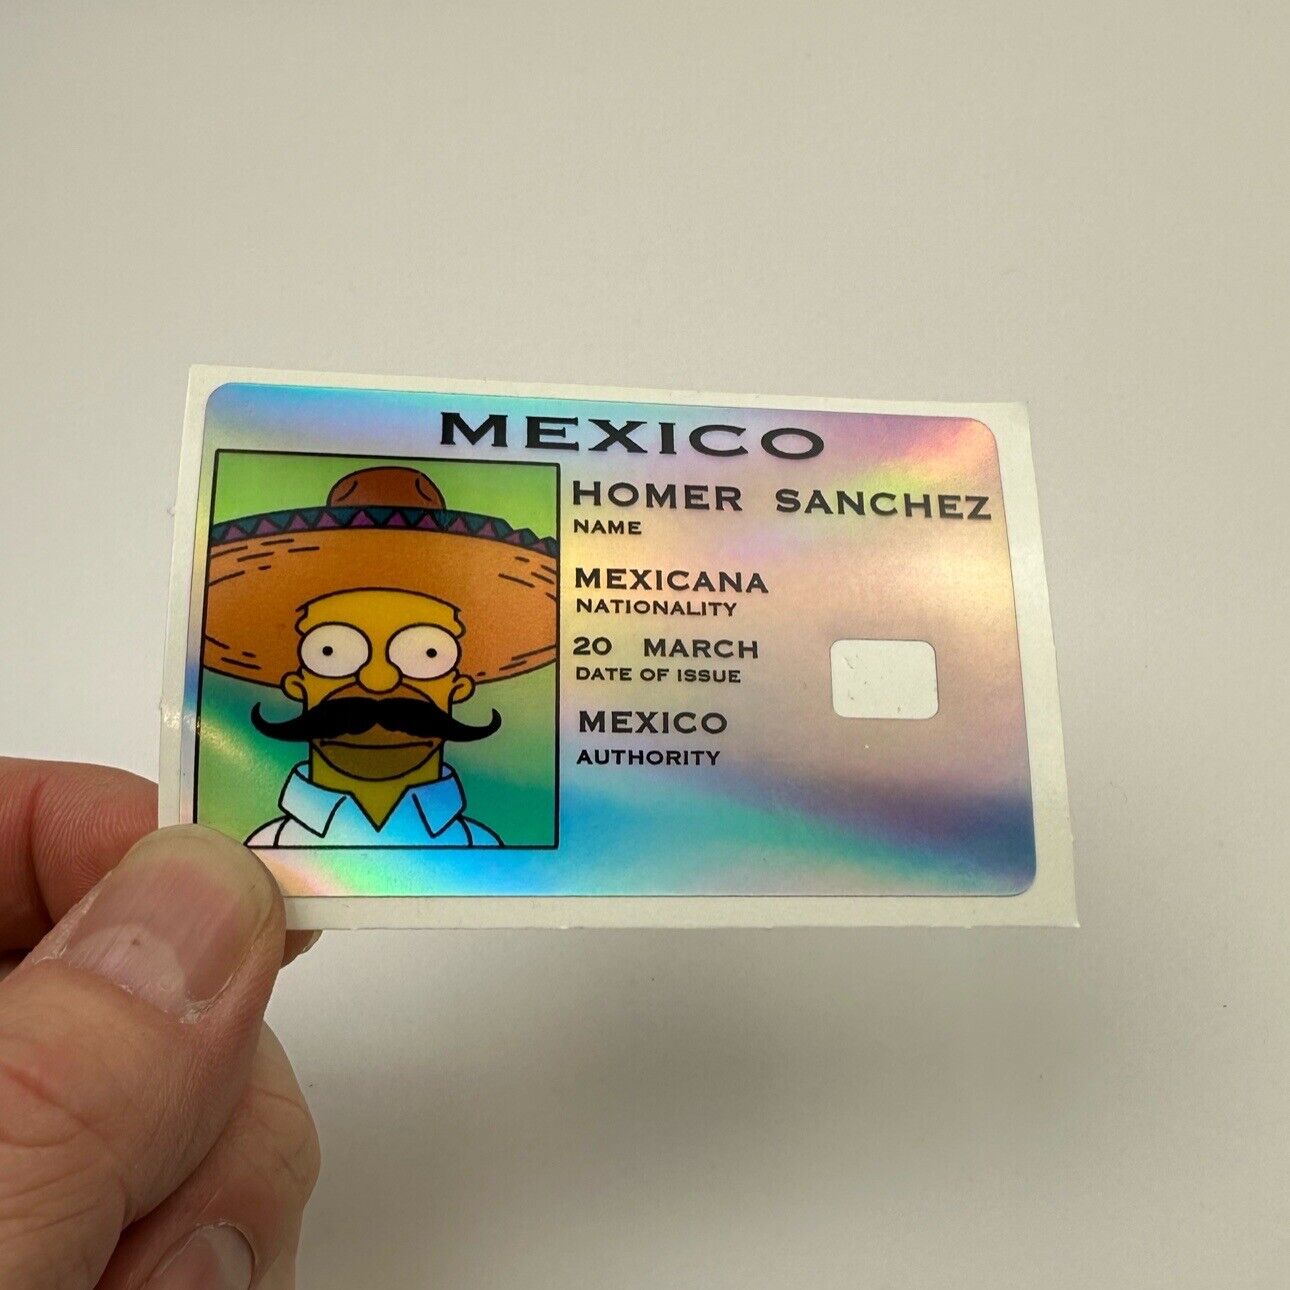 Credit Card Skins Homer Sanchez Holographic Decal